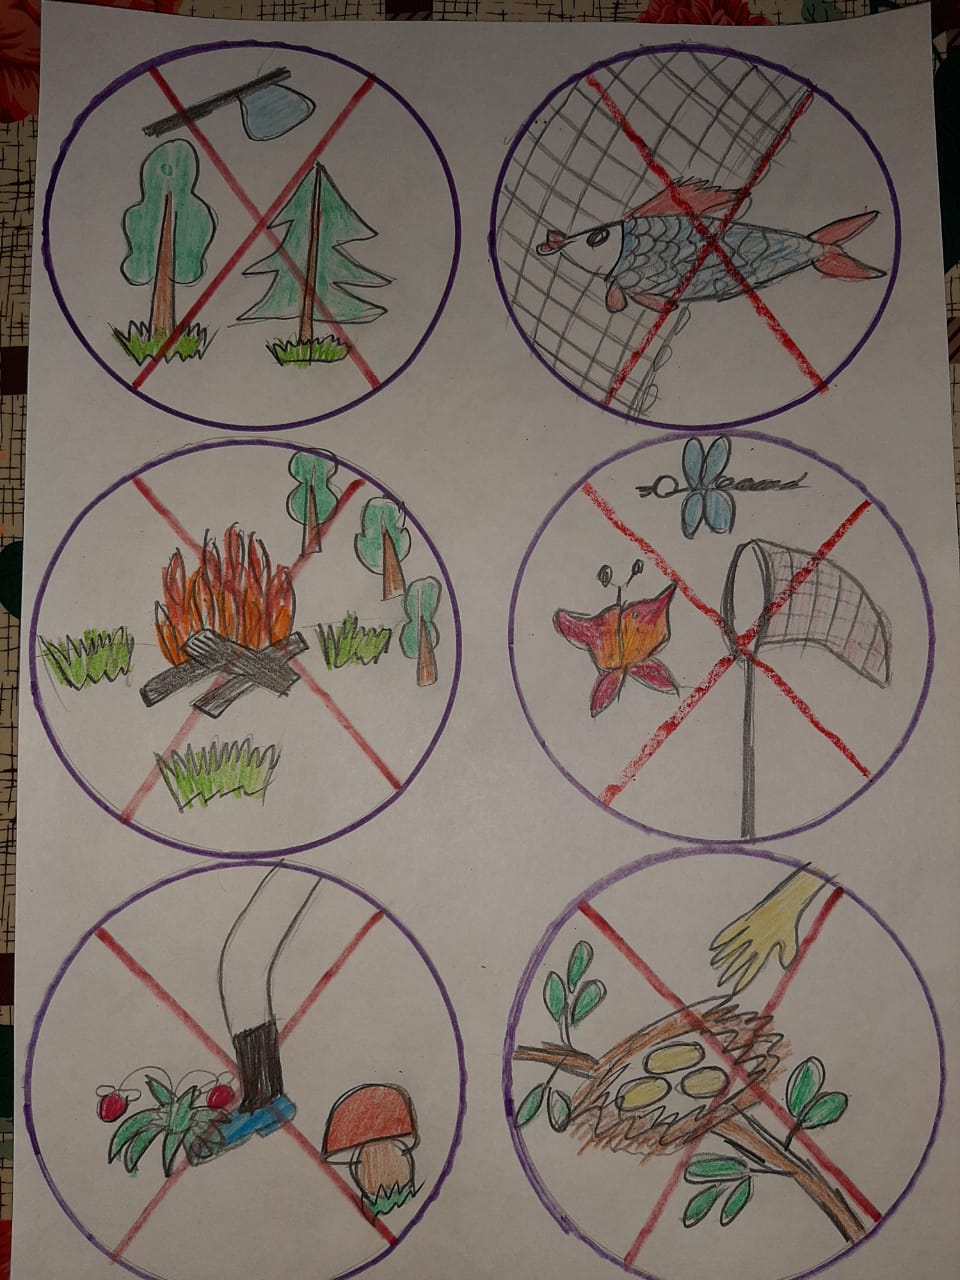 Экологические знаки для дошкольников в картинках